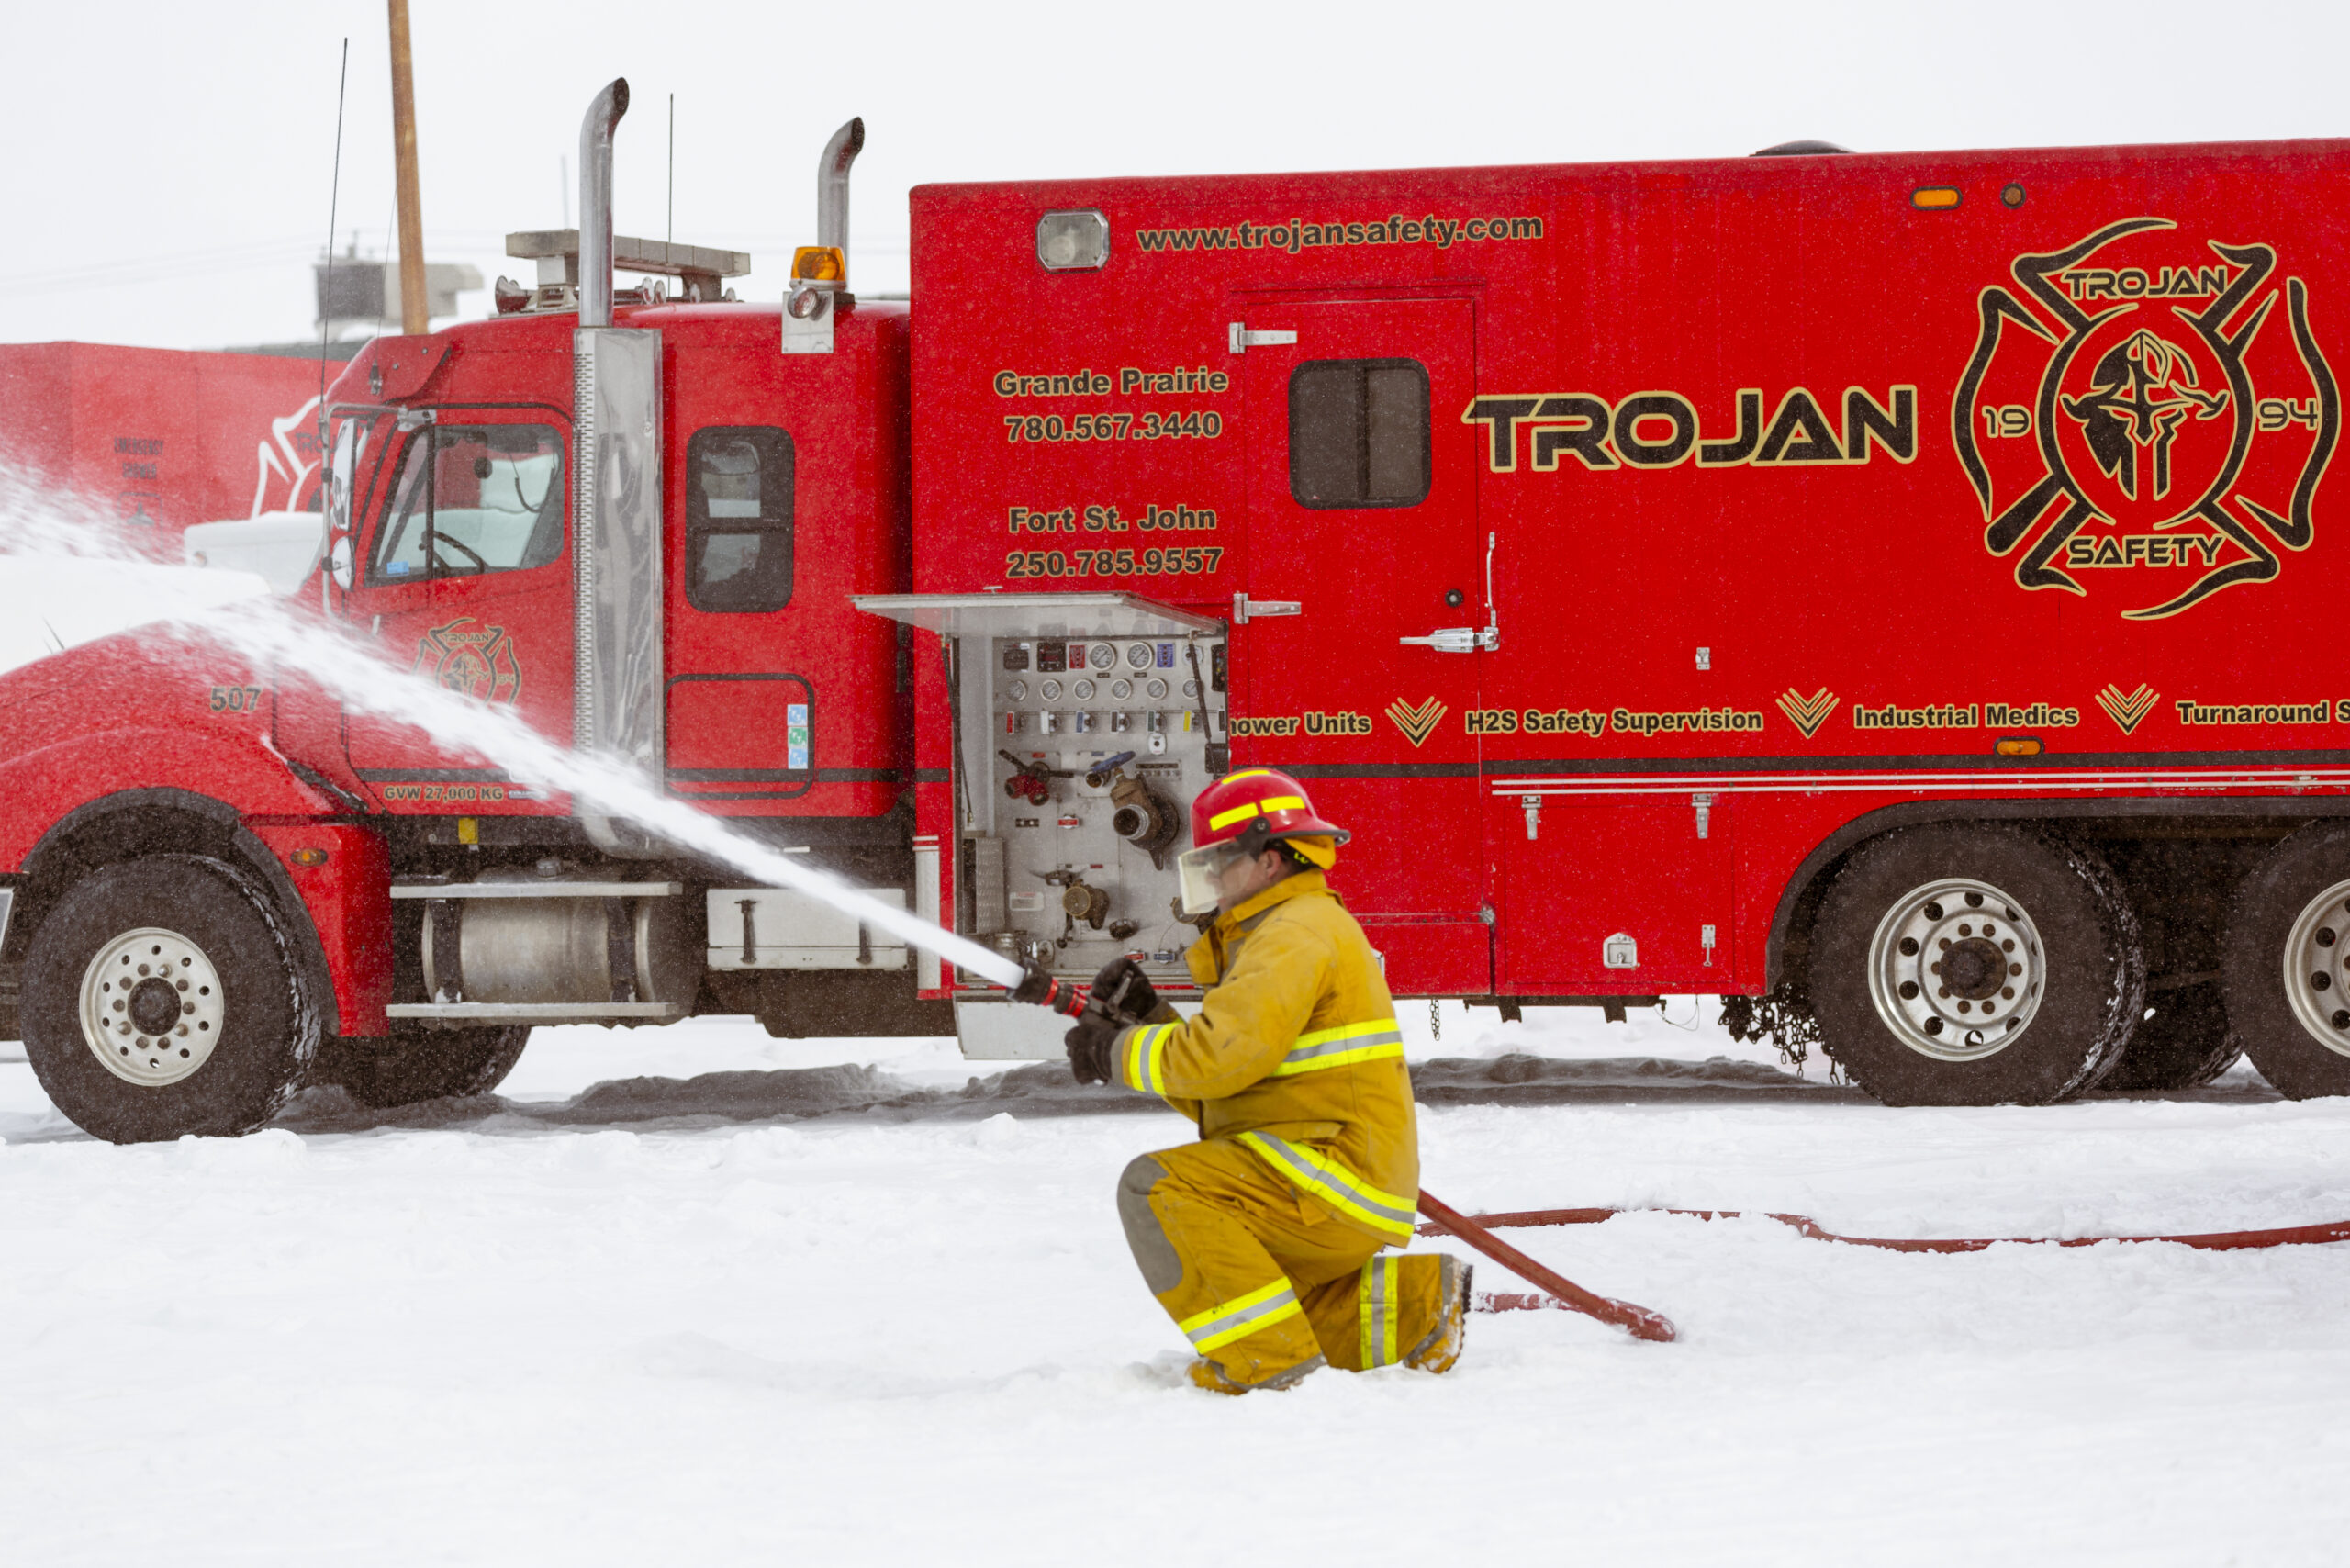 Firefighter using a fire hose